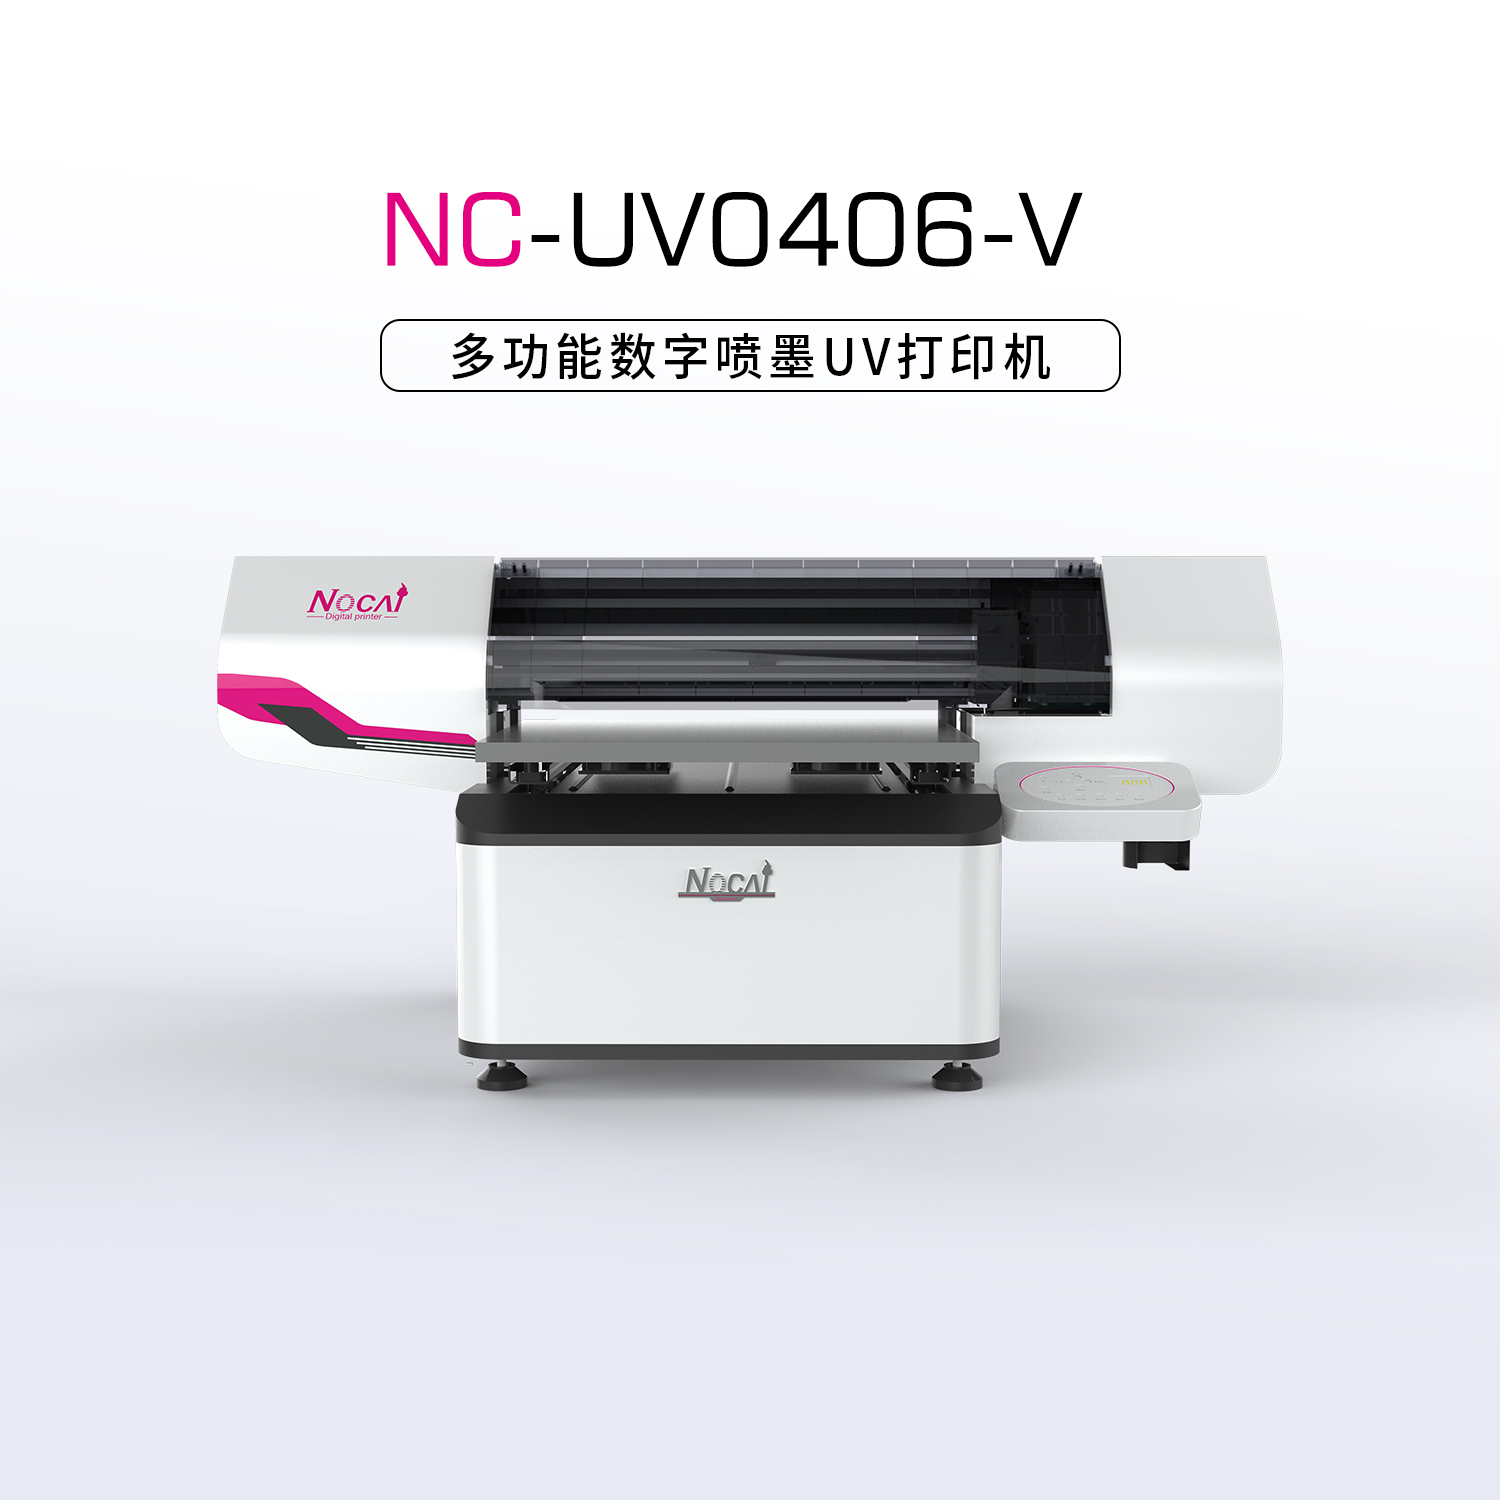 UV打印机操作员需具备哪些技能？